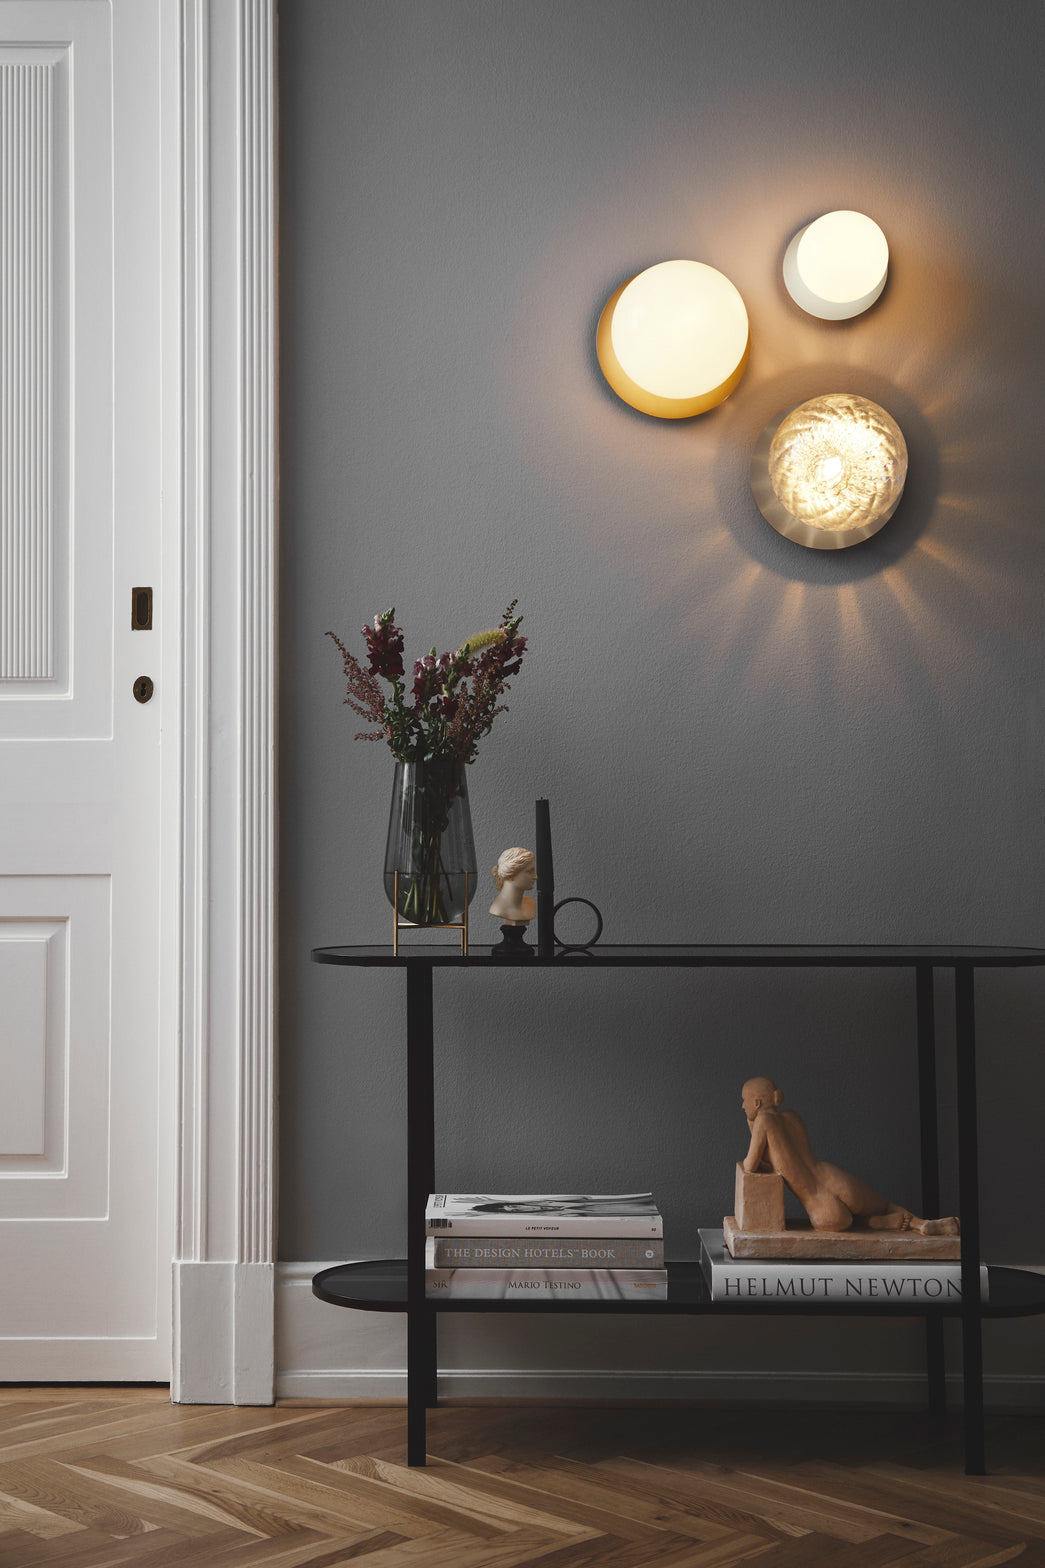 Væglamper med lampeskærme af opalglas og sølvfarvet fatning, i dagligstuemiljø